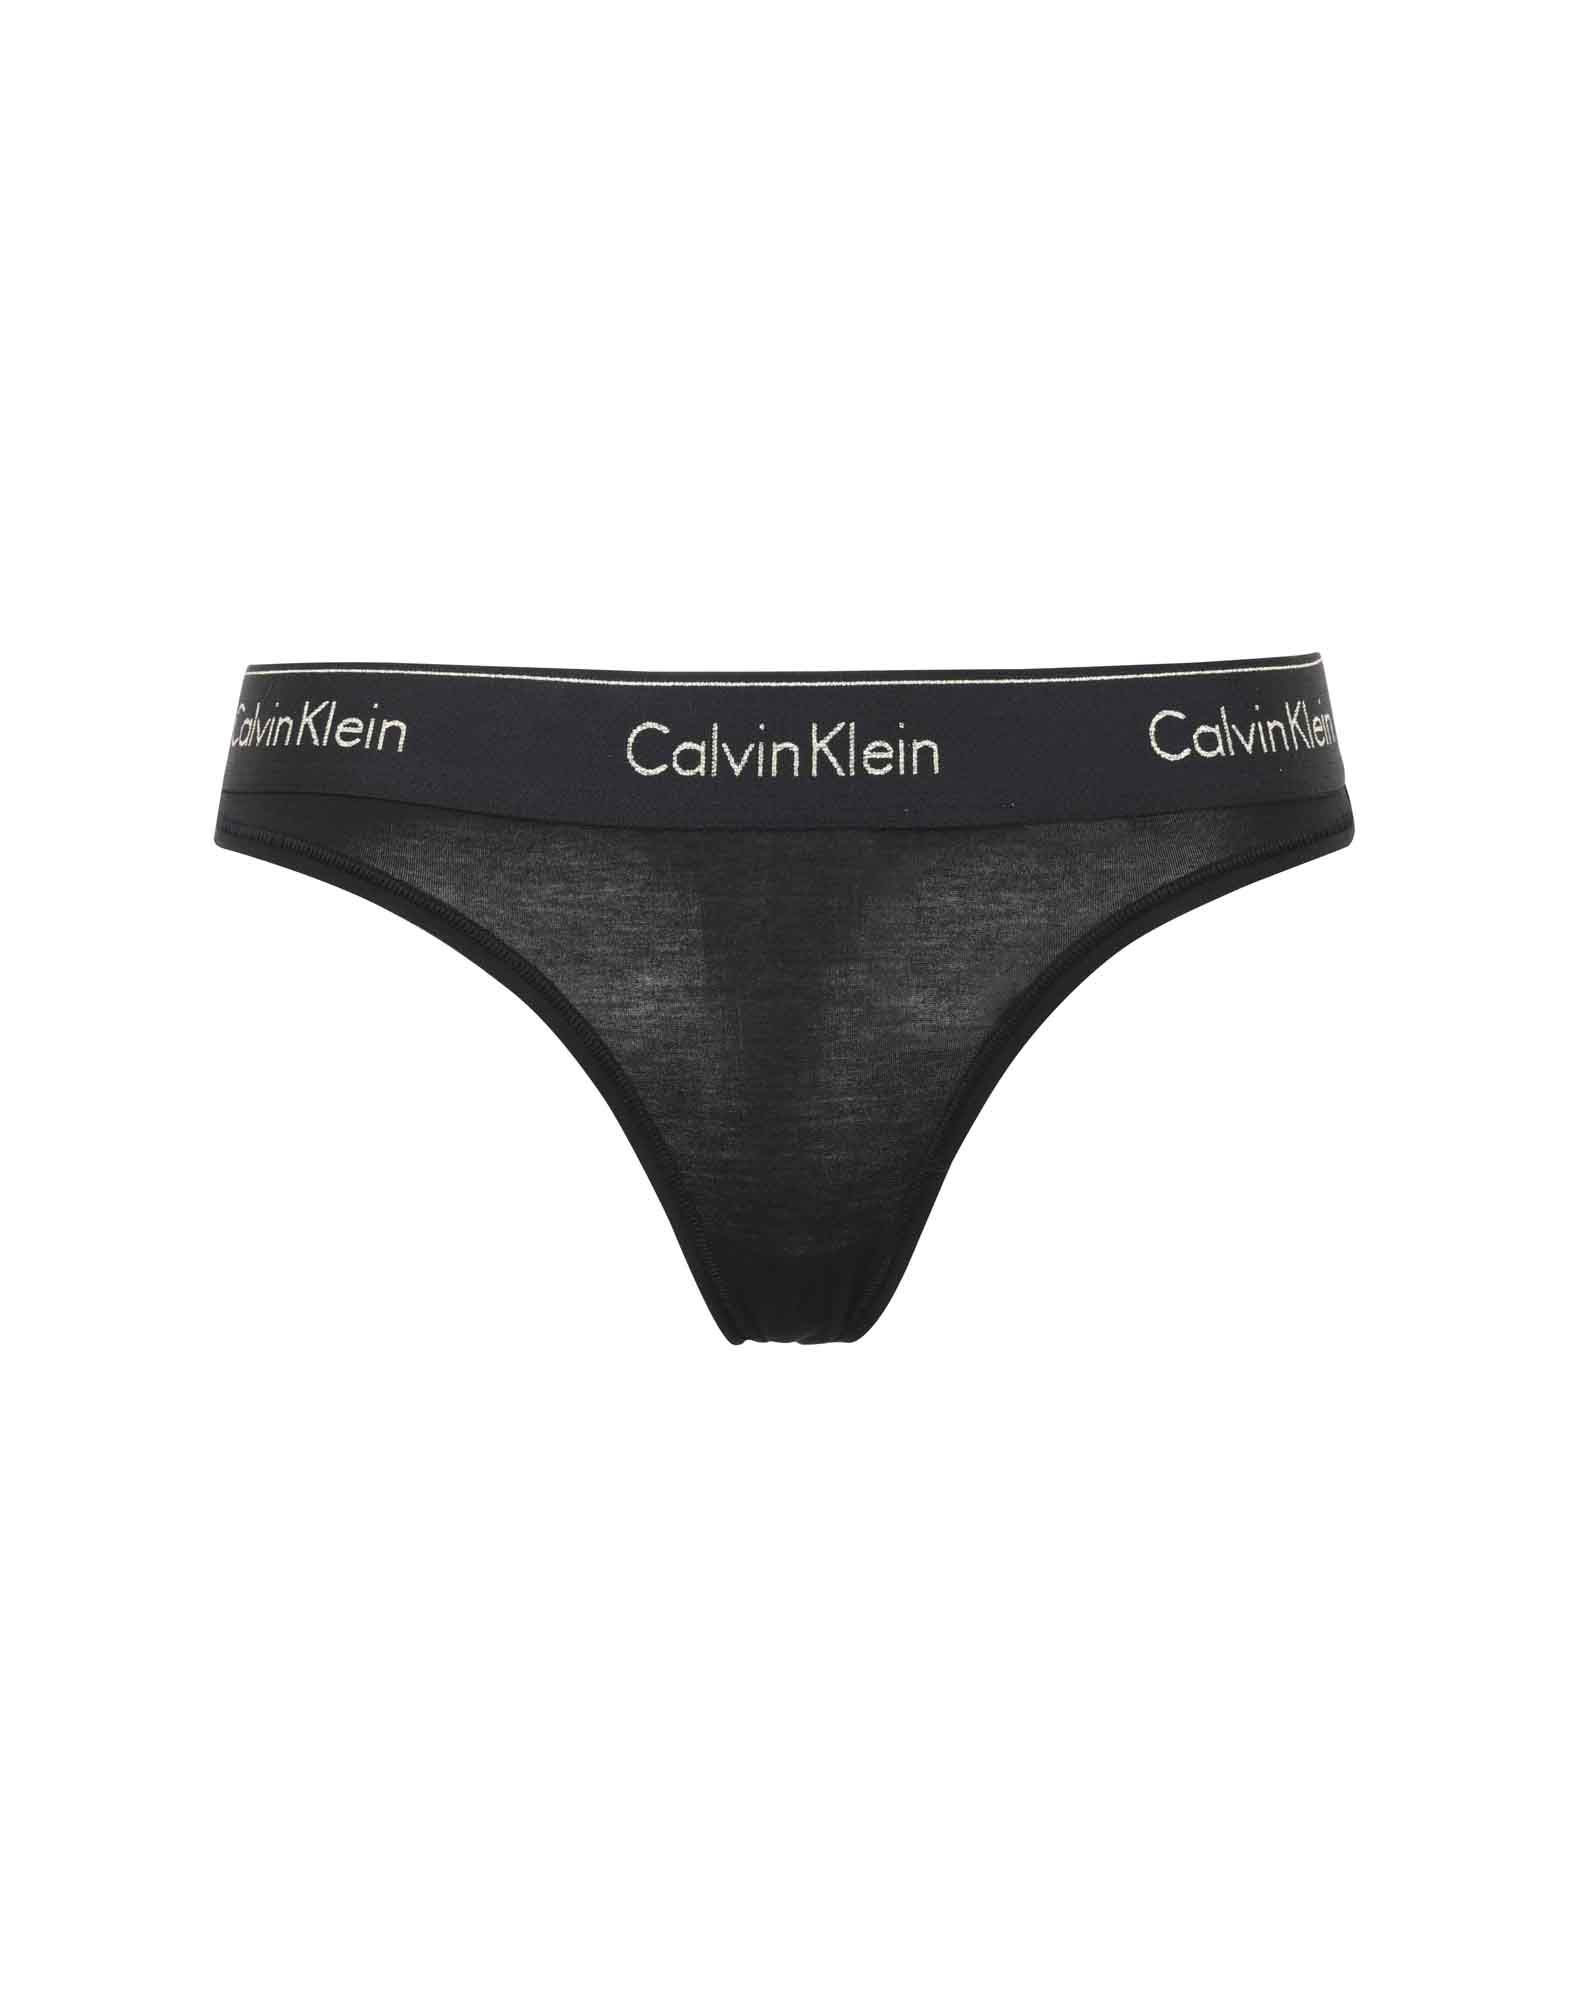 calvin klein underwear black friday